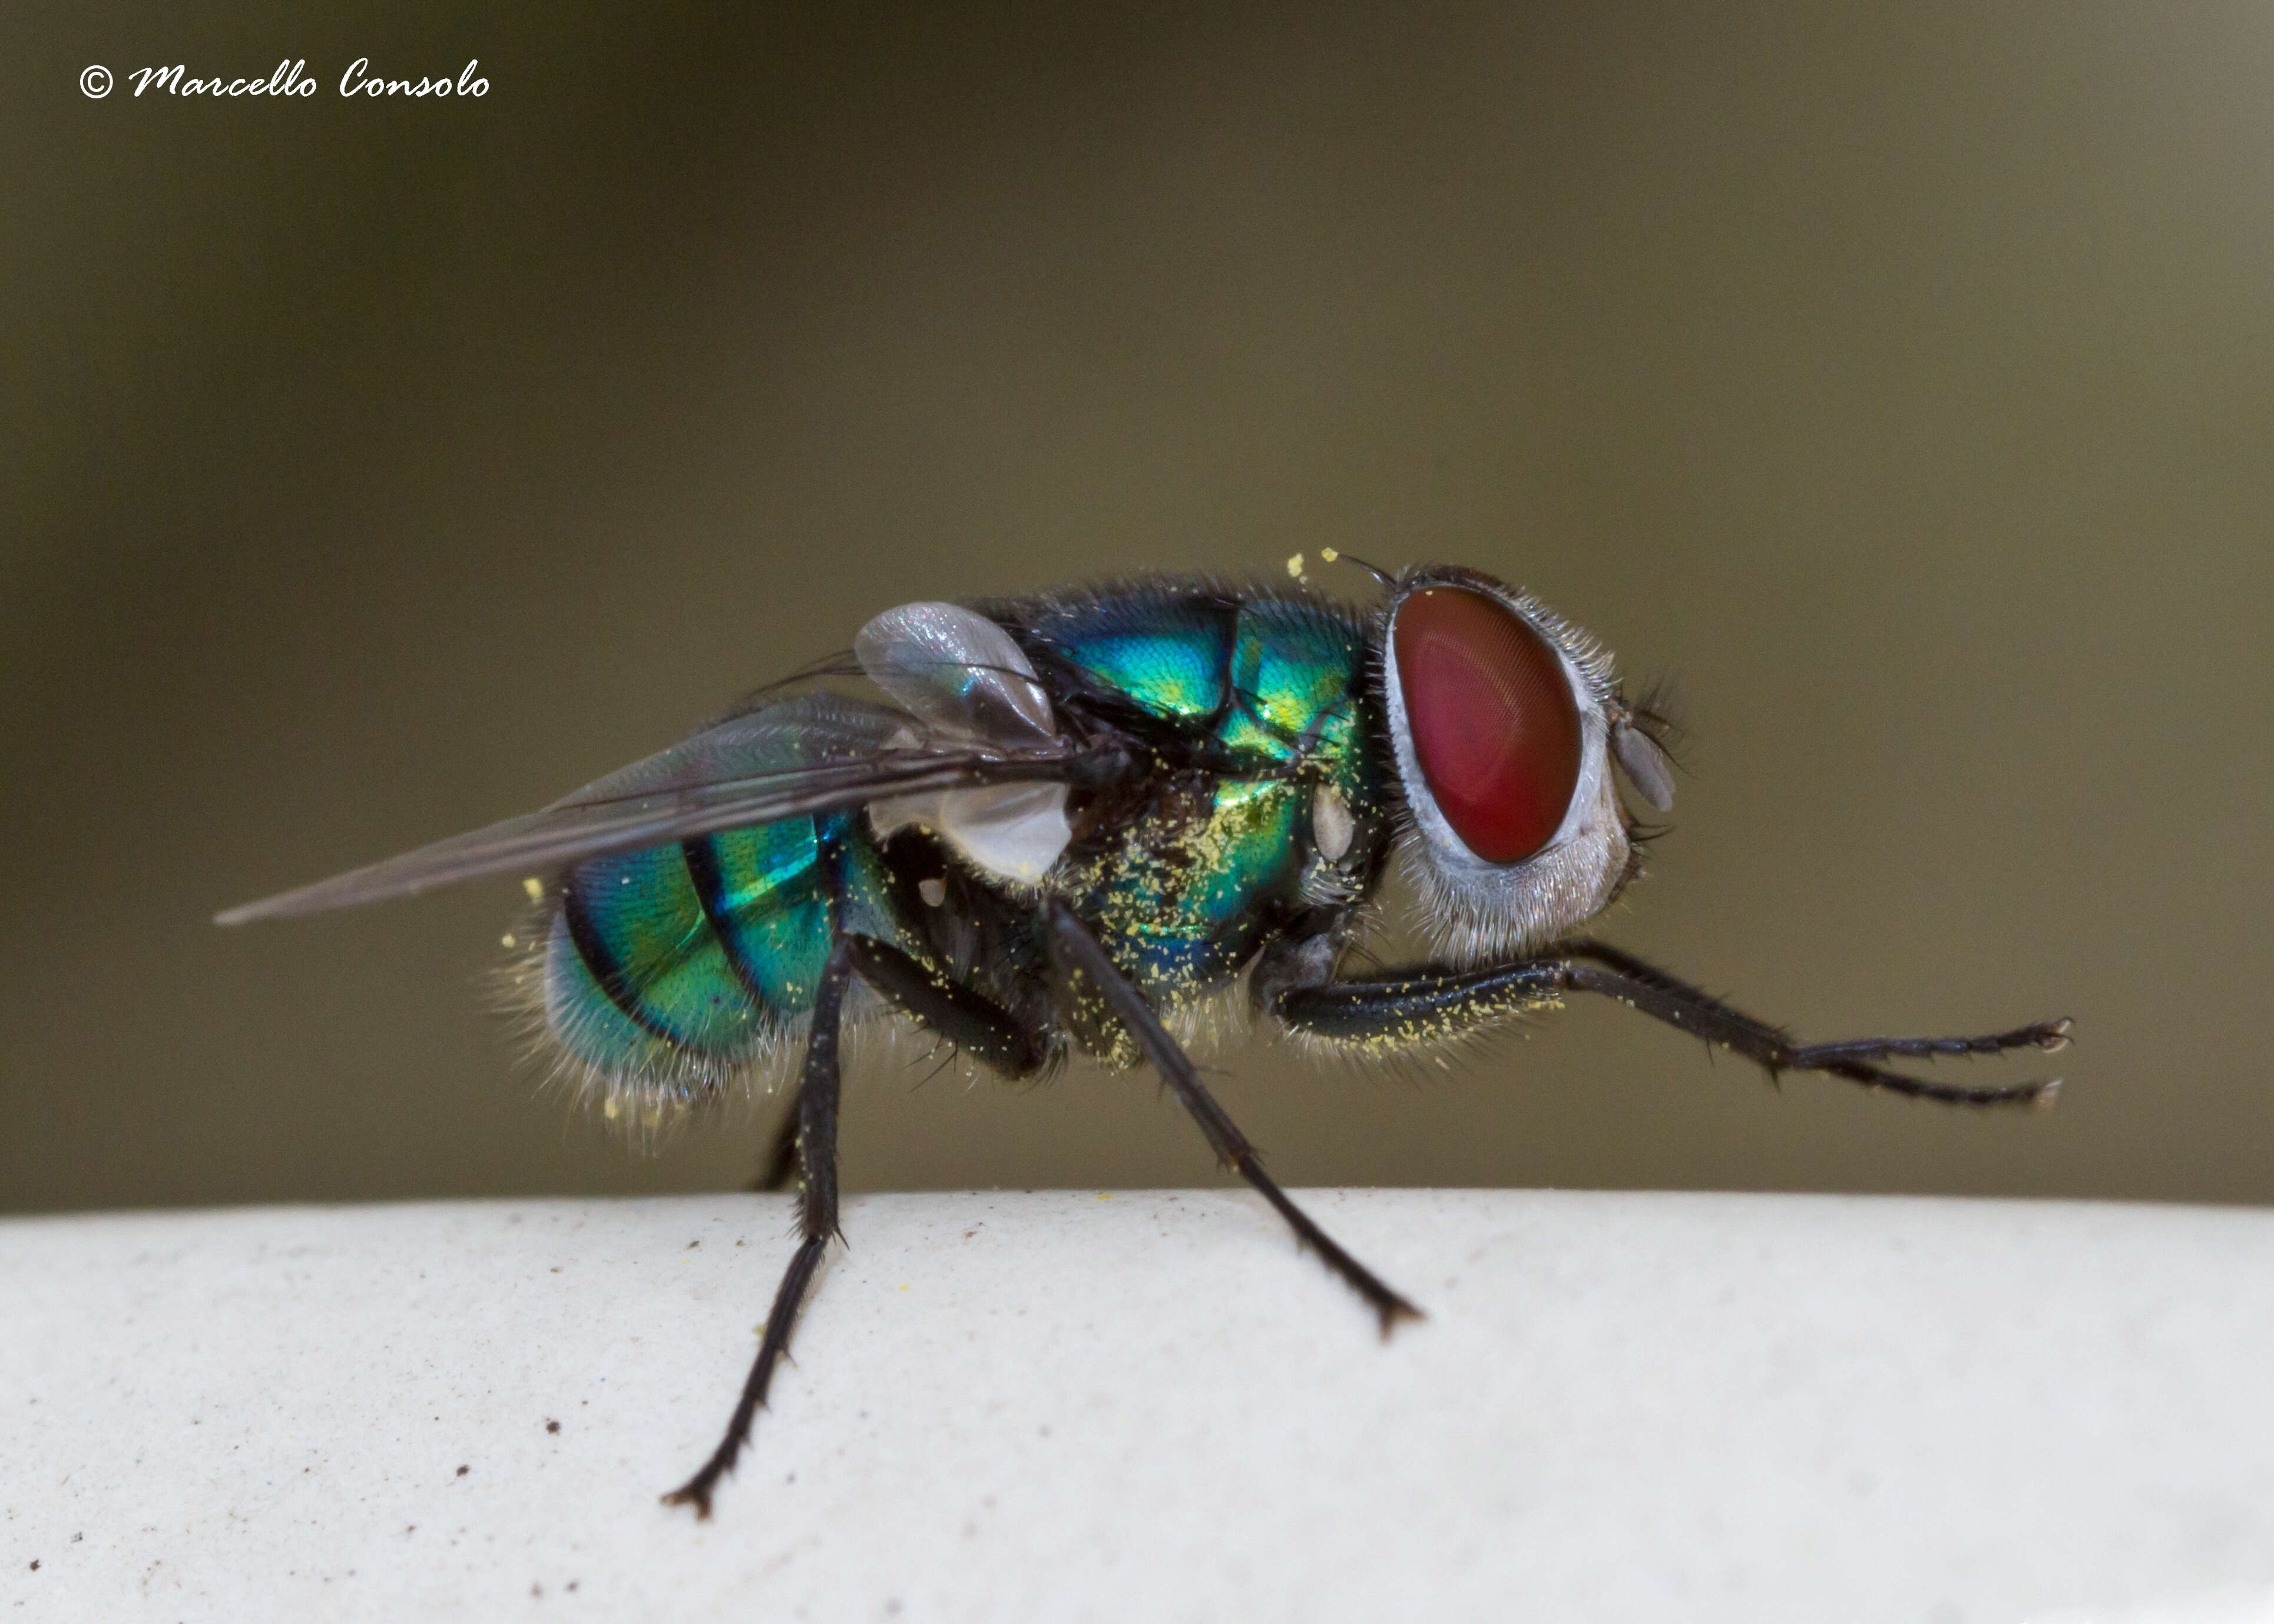 Image of blow flies